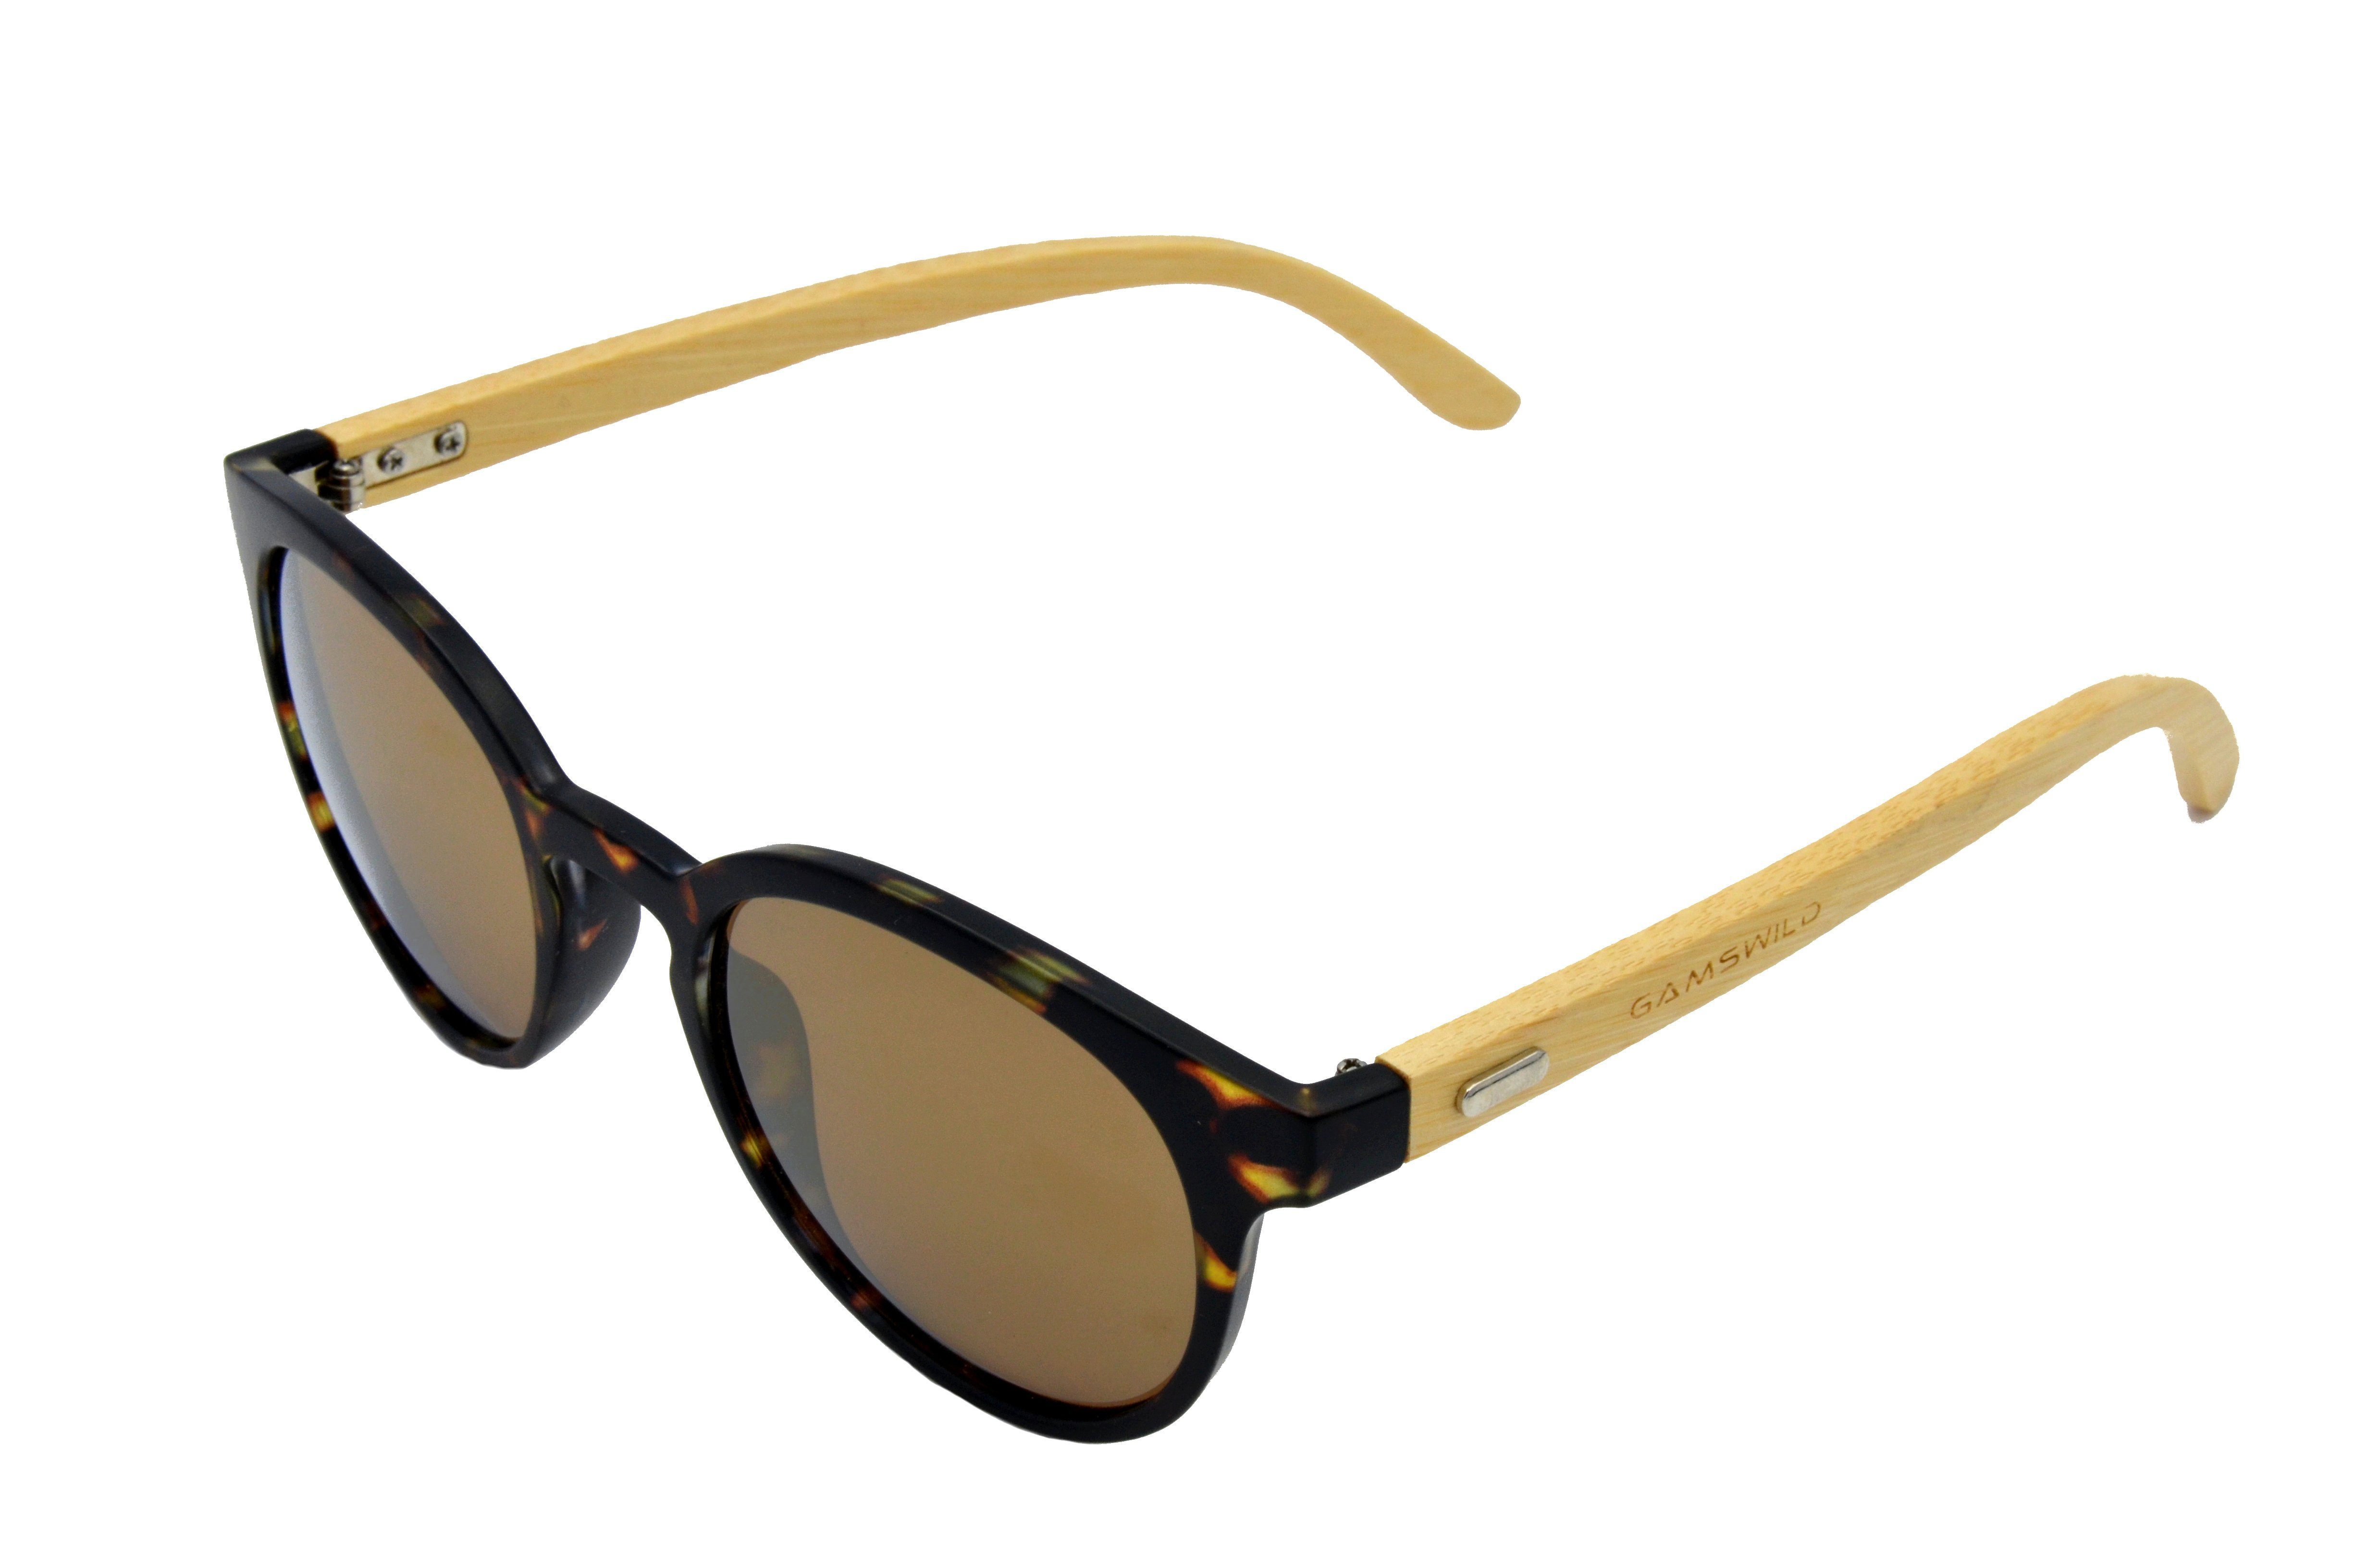 Gamswild Sonnenbrille »WM1228 GAMSSTYLE Mode Brille Damen Herren Unisex  Bambusholz, rot-braun, braun-getigert, pink-braun« Bambusholzbügel online  kaufen | OTTO